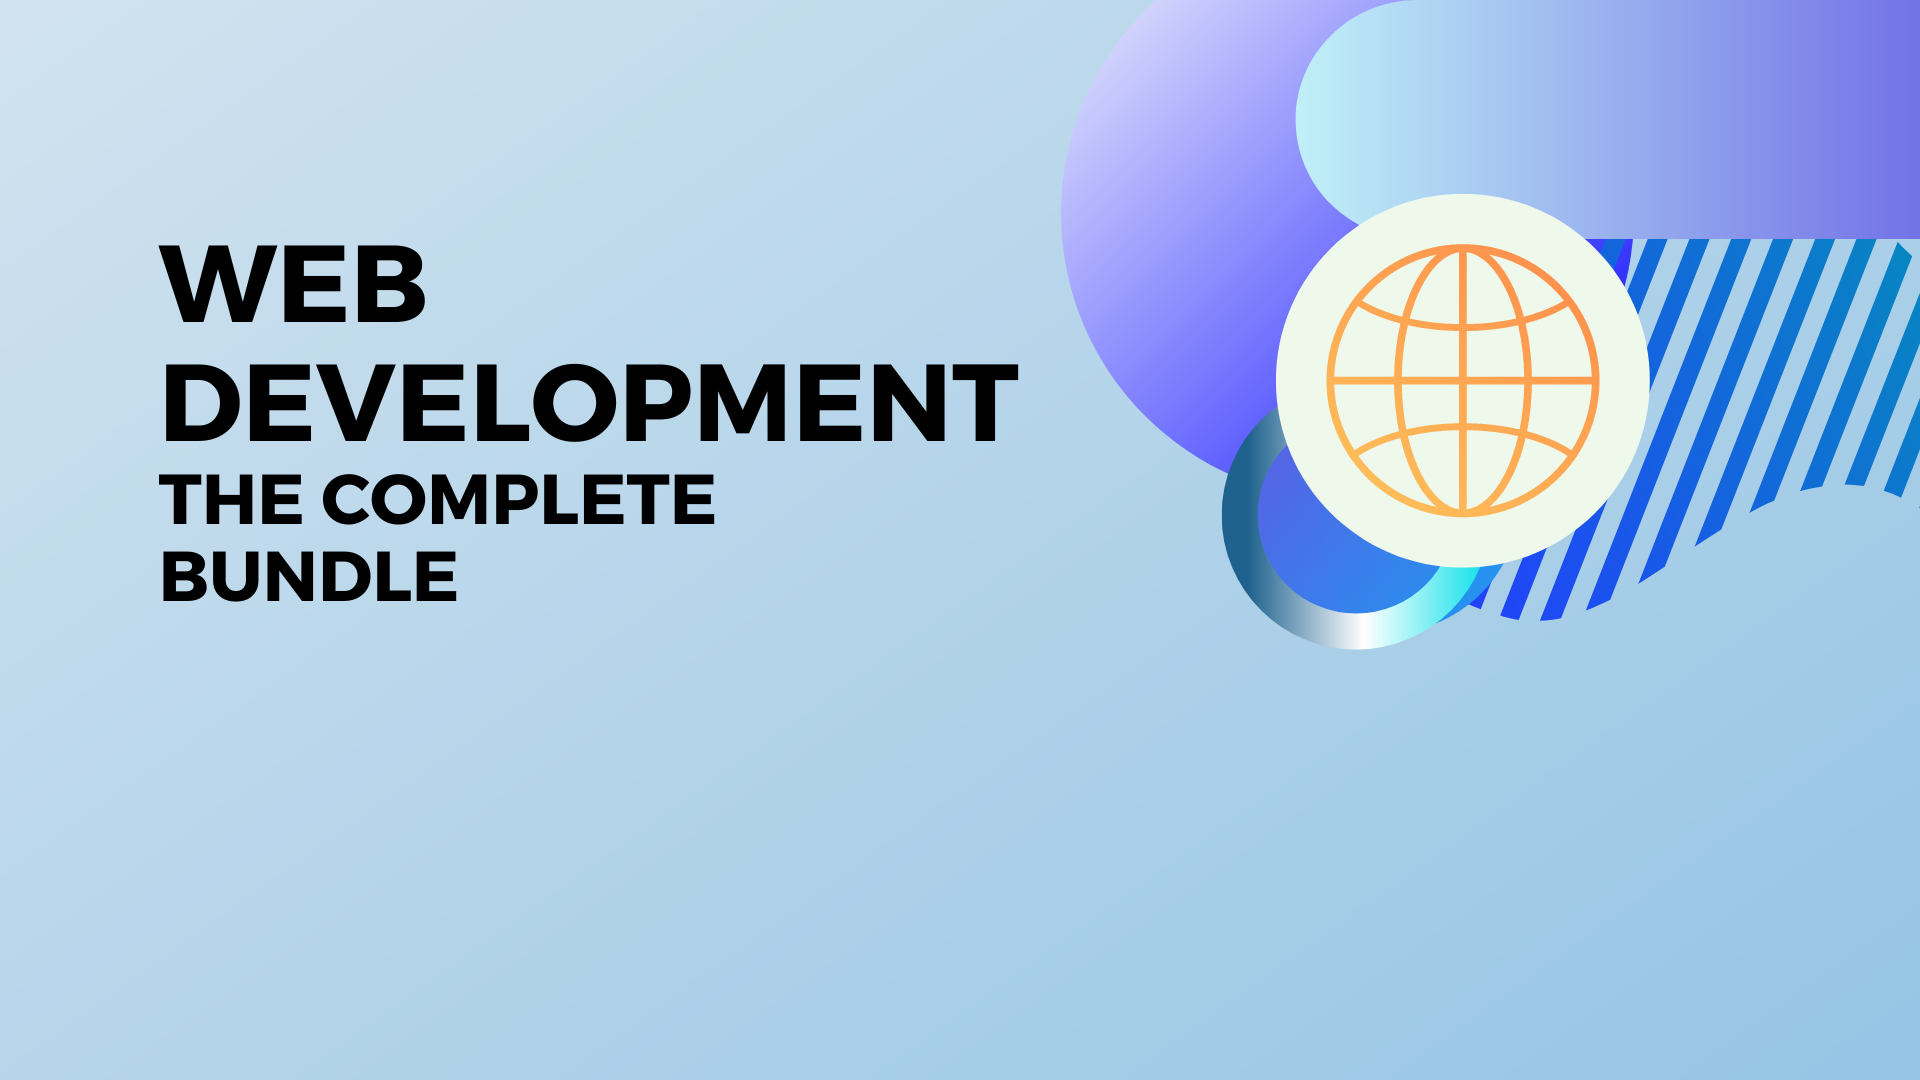 Web Development The complete bundle